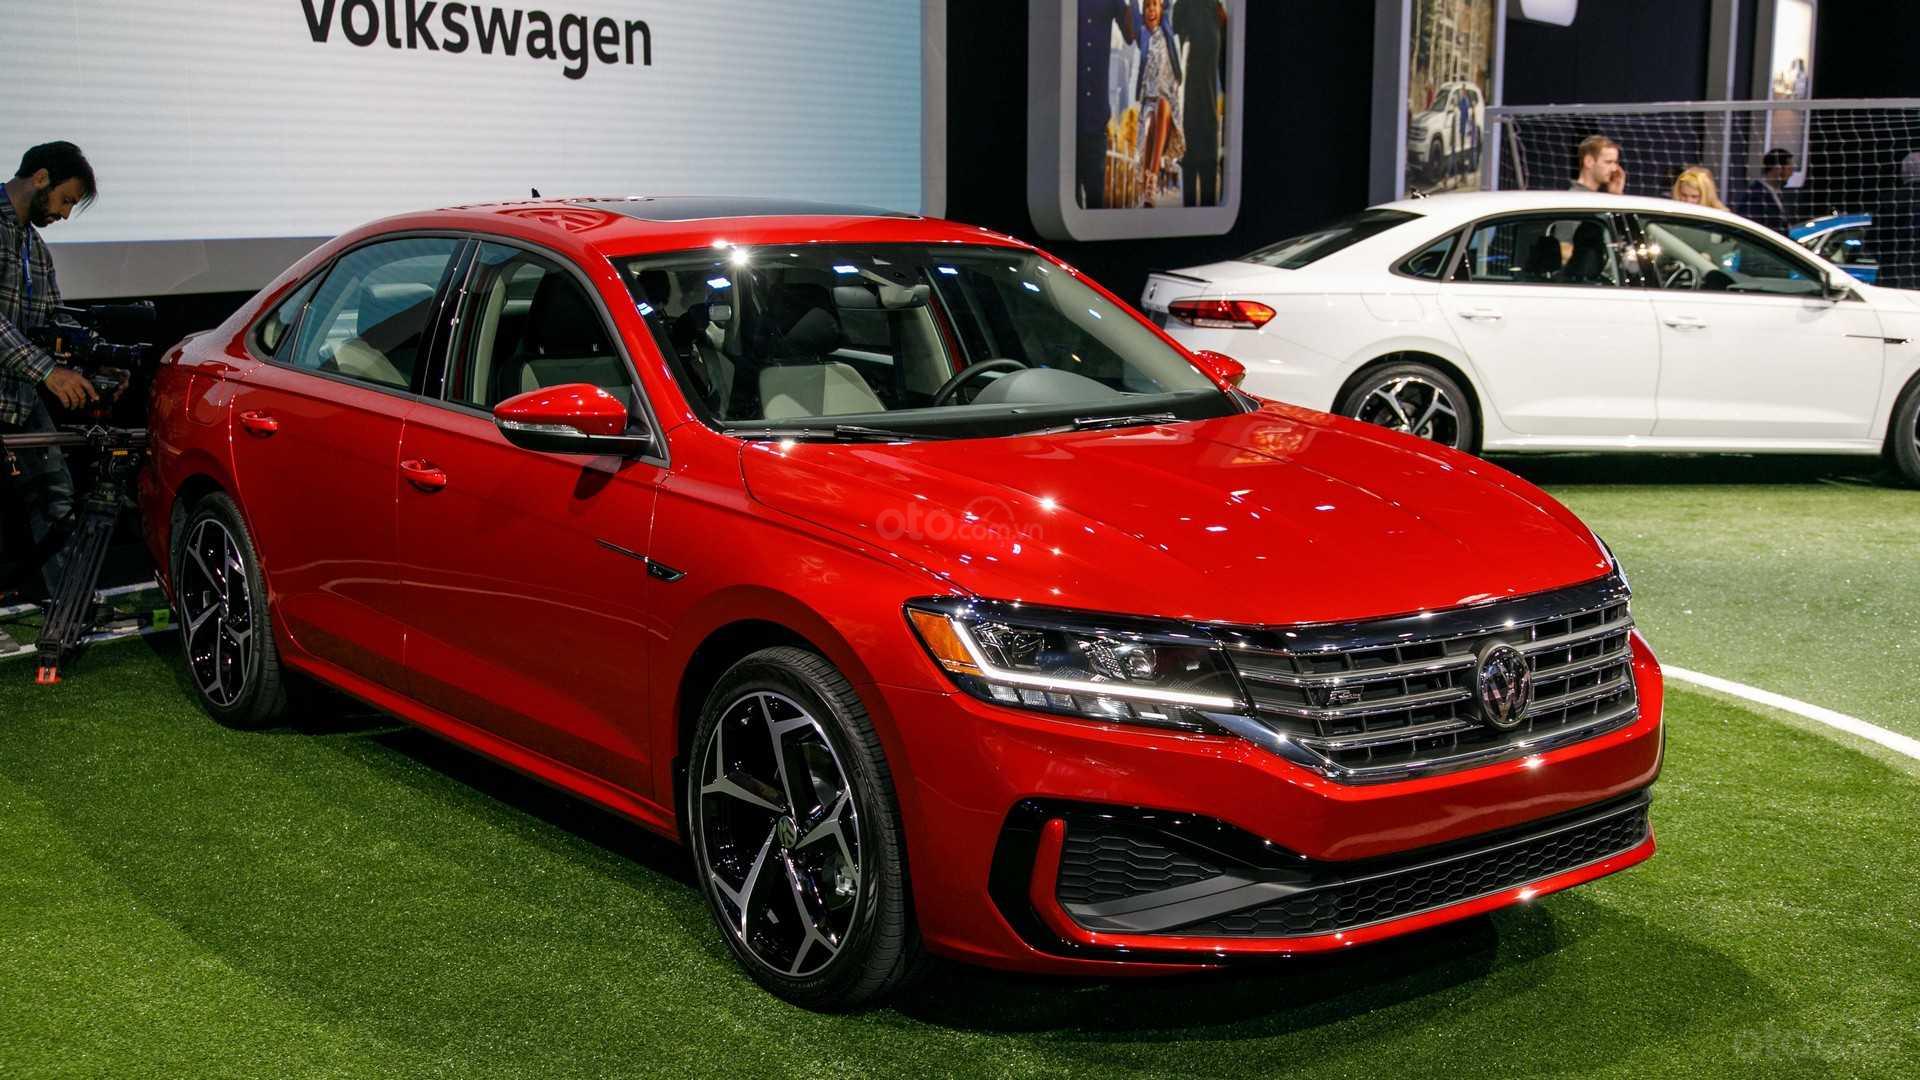 Góc 3/4 đầu xe Volkswagen Passat 2020